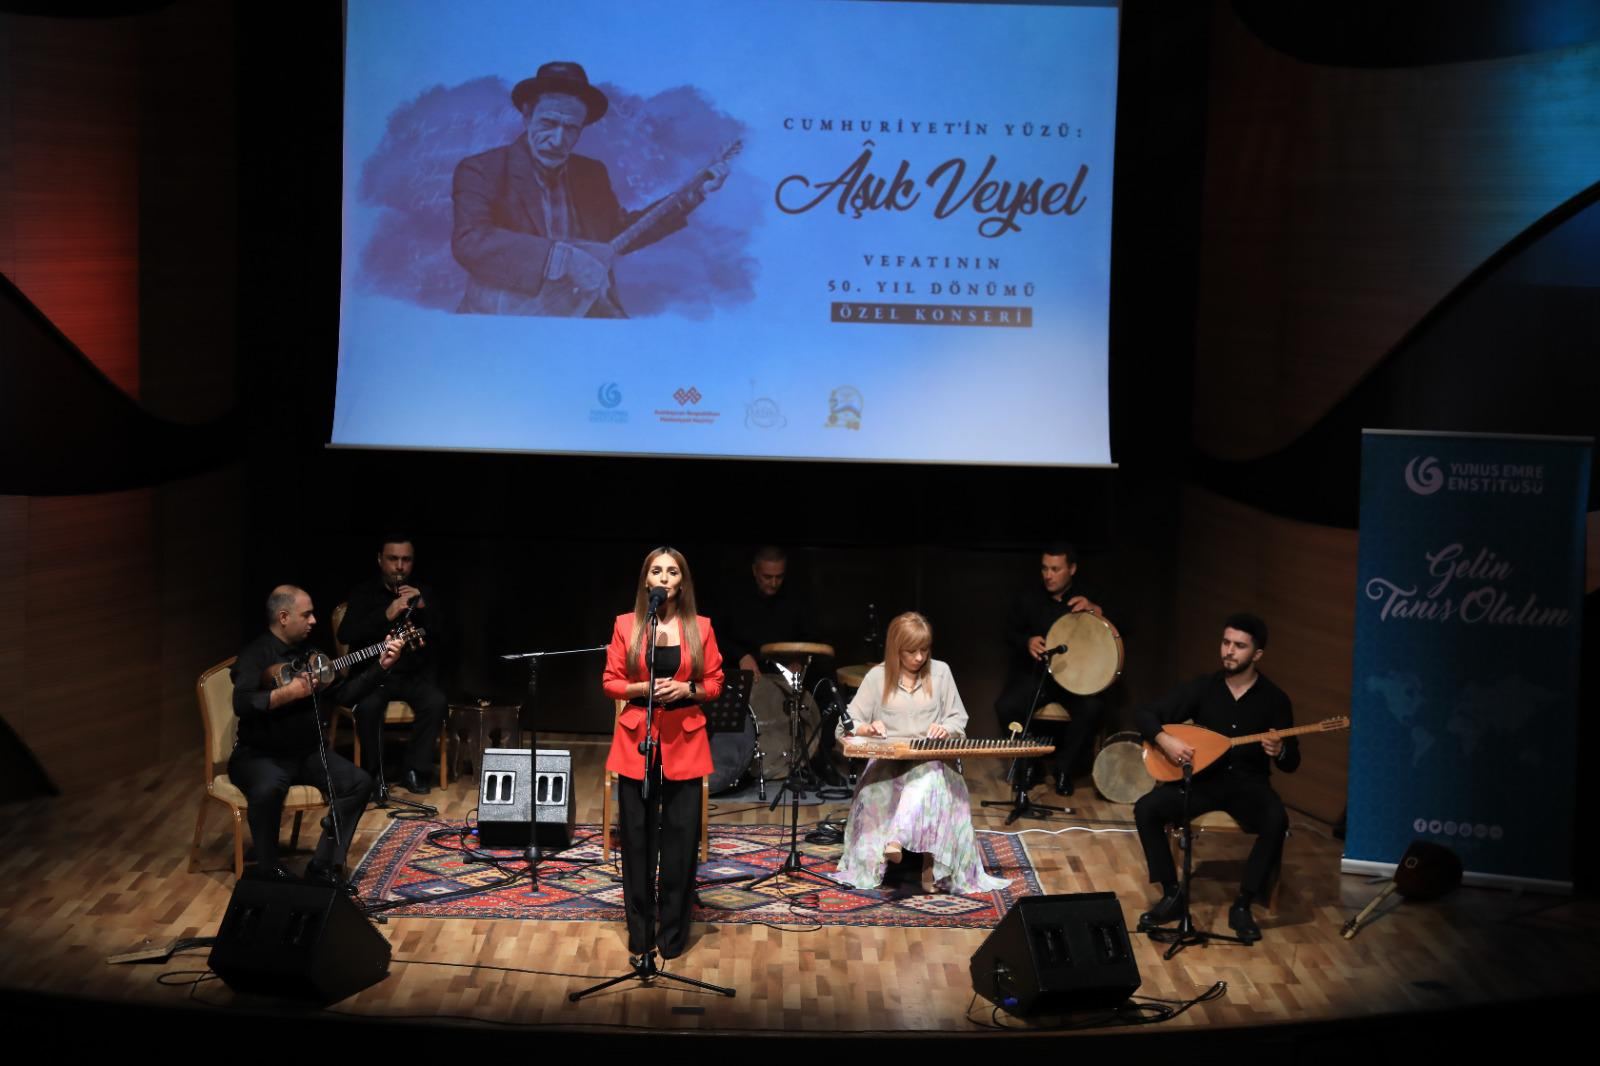 В Баку прошел концерт, посвященный творчеству Ашуга Вейселя  (ФОТО)